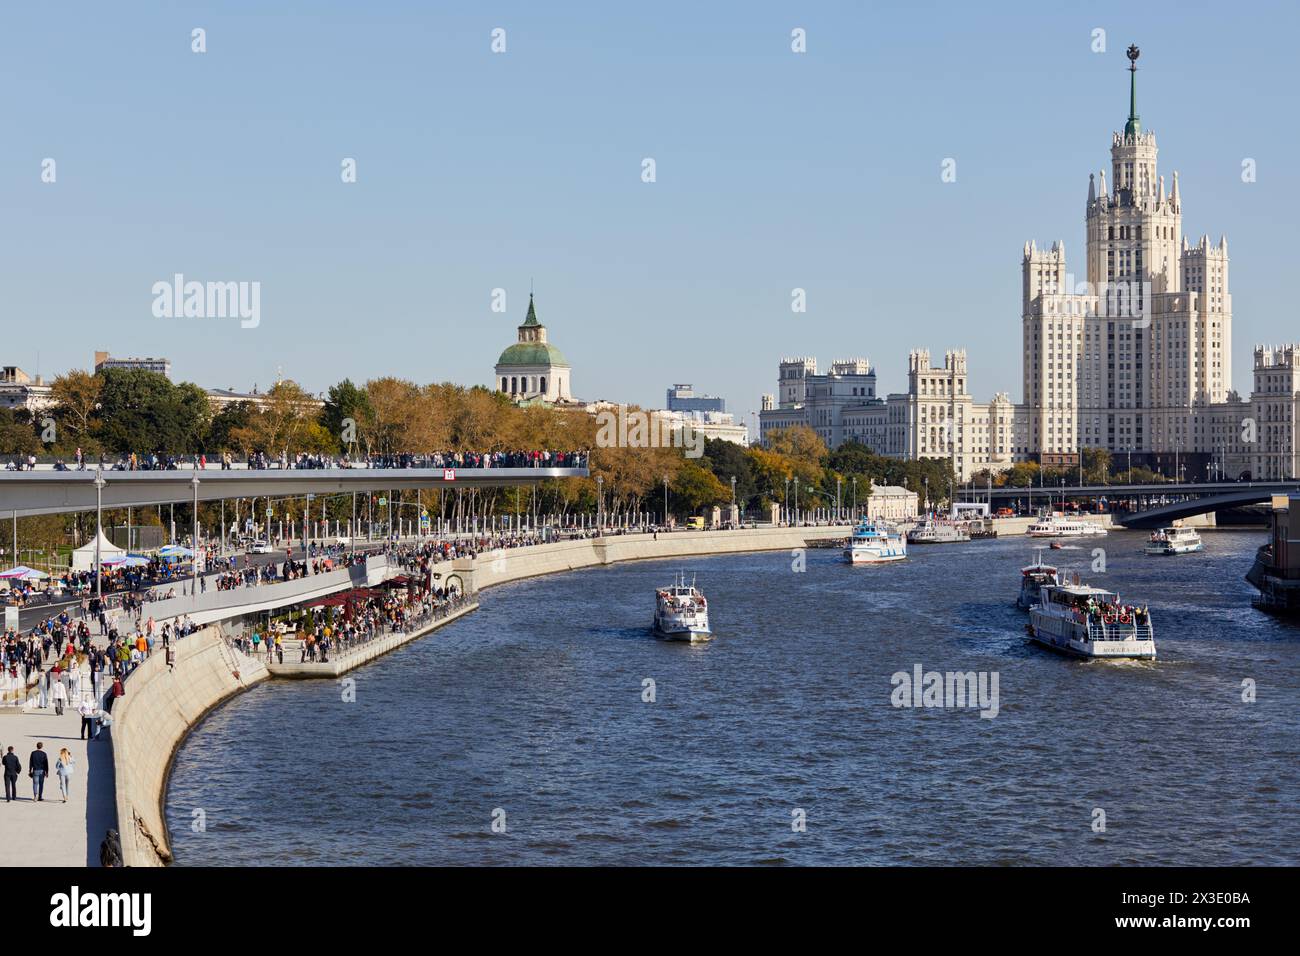 MOSCA, RUSSIA - 24 settembre 2017: Terrapieno Moskvoretskaya, ponte galleggiante sopra il fiume Moskva, torre Kotelnicheskaya, ponte grande Ustinsky, barche su Mos Foto Stock